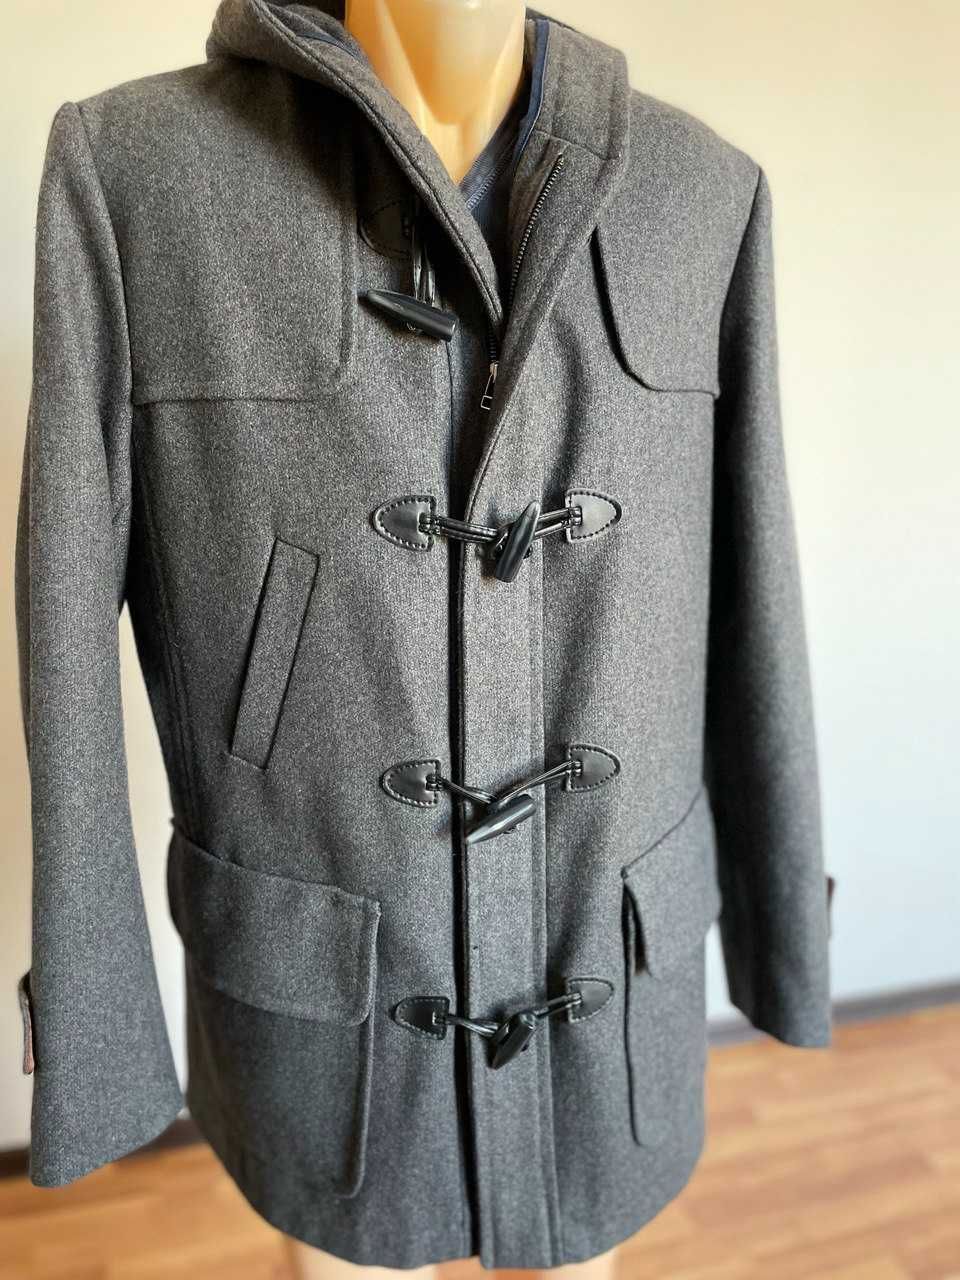 Мужская куртка, пол пальто (дафлкот)  от Bertoni, из Италии.